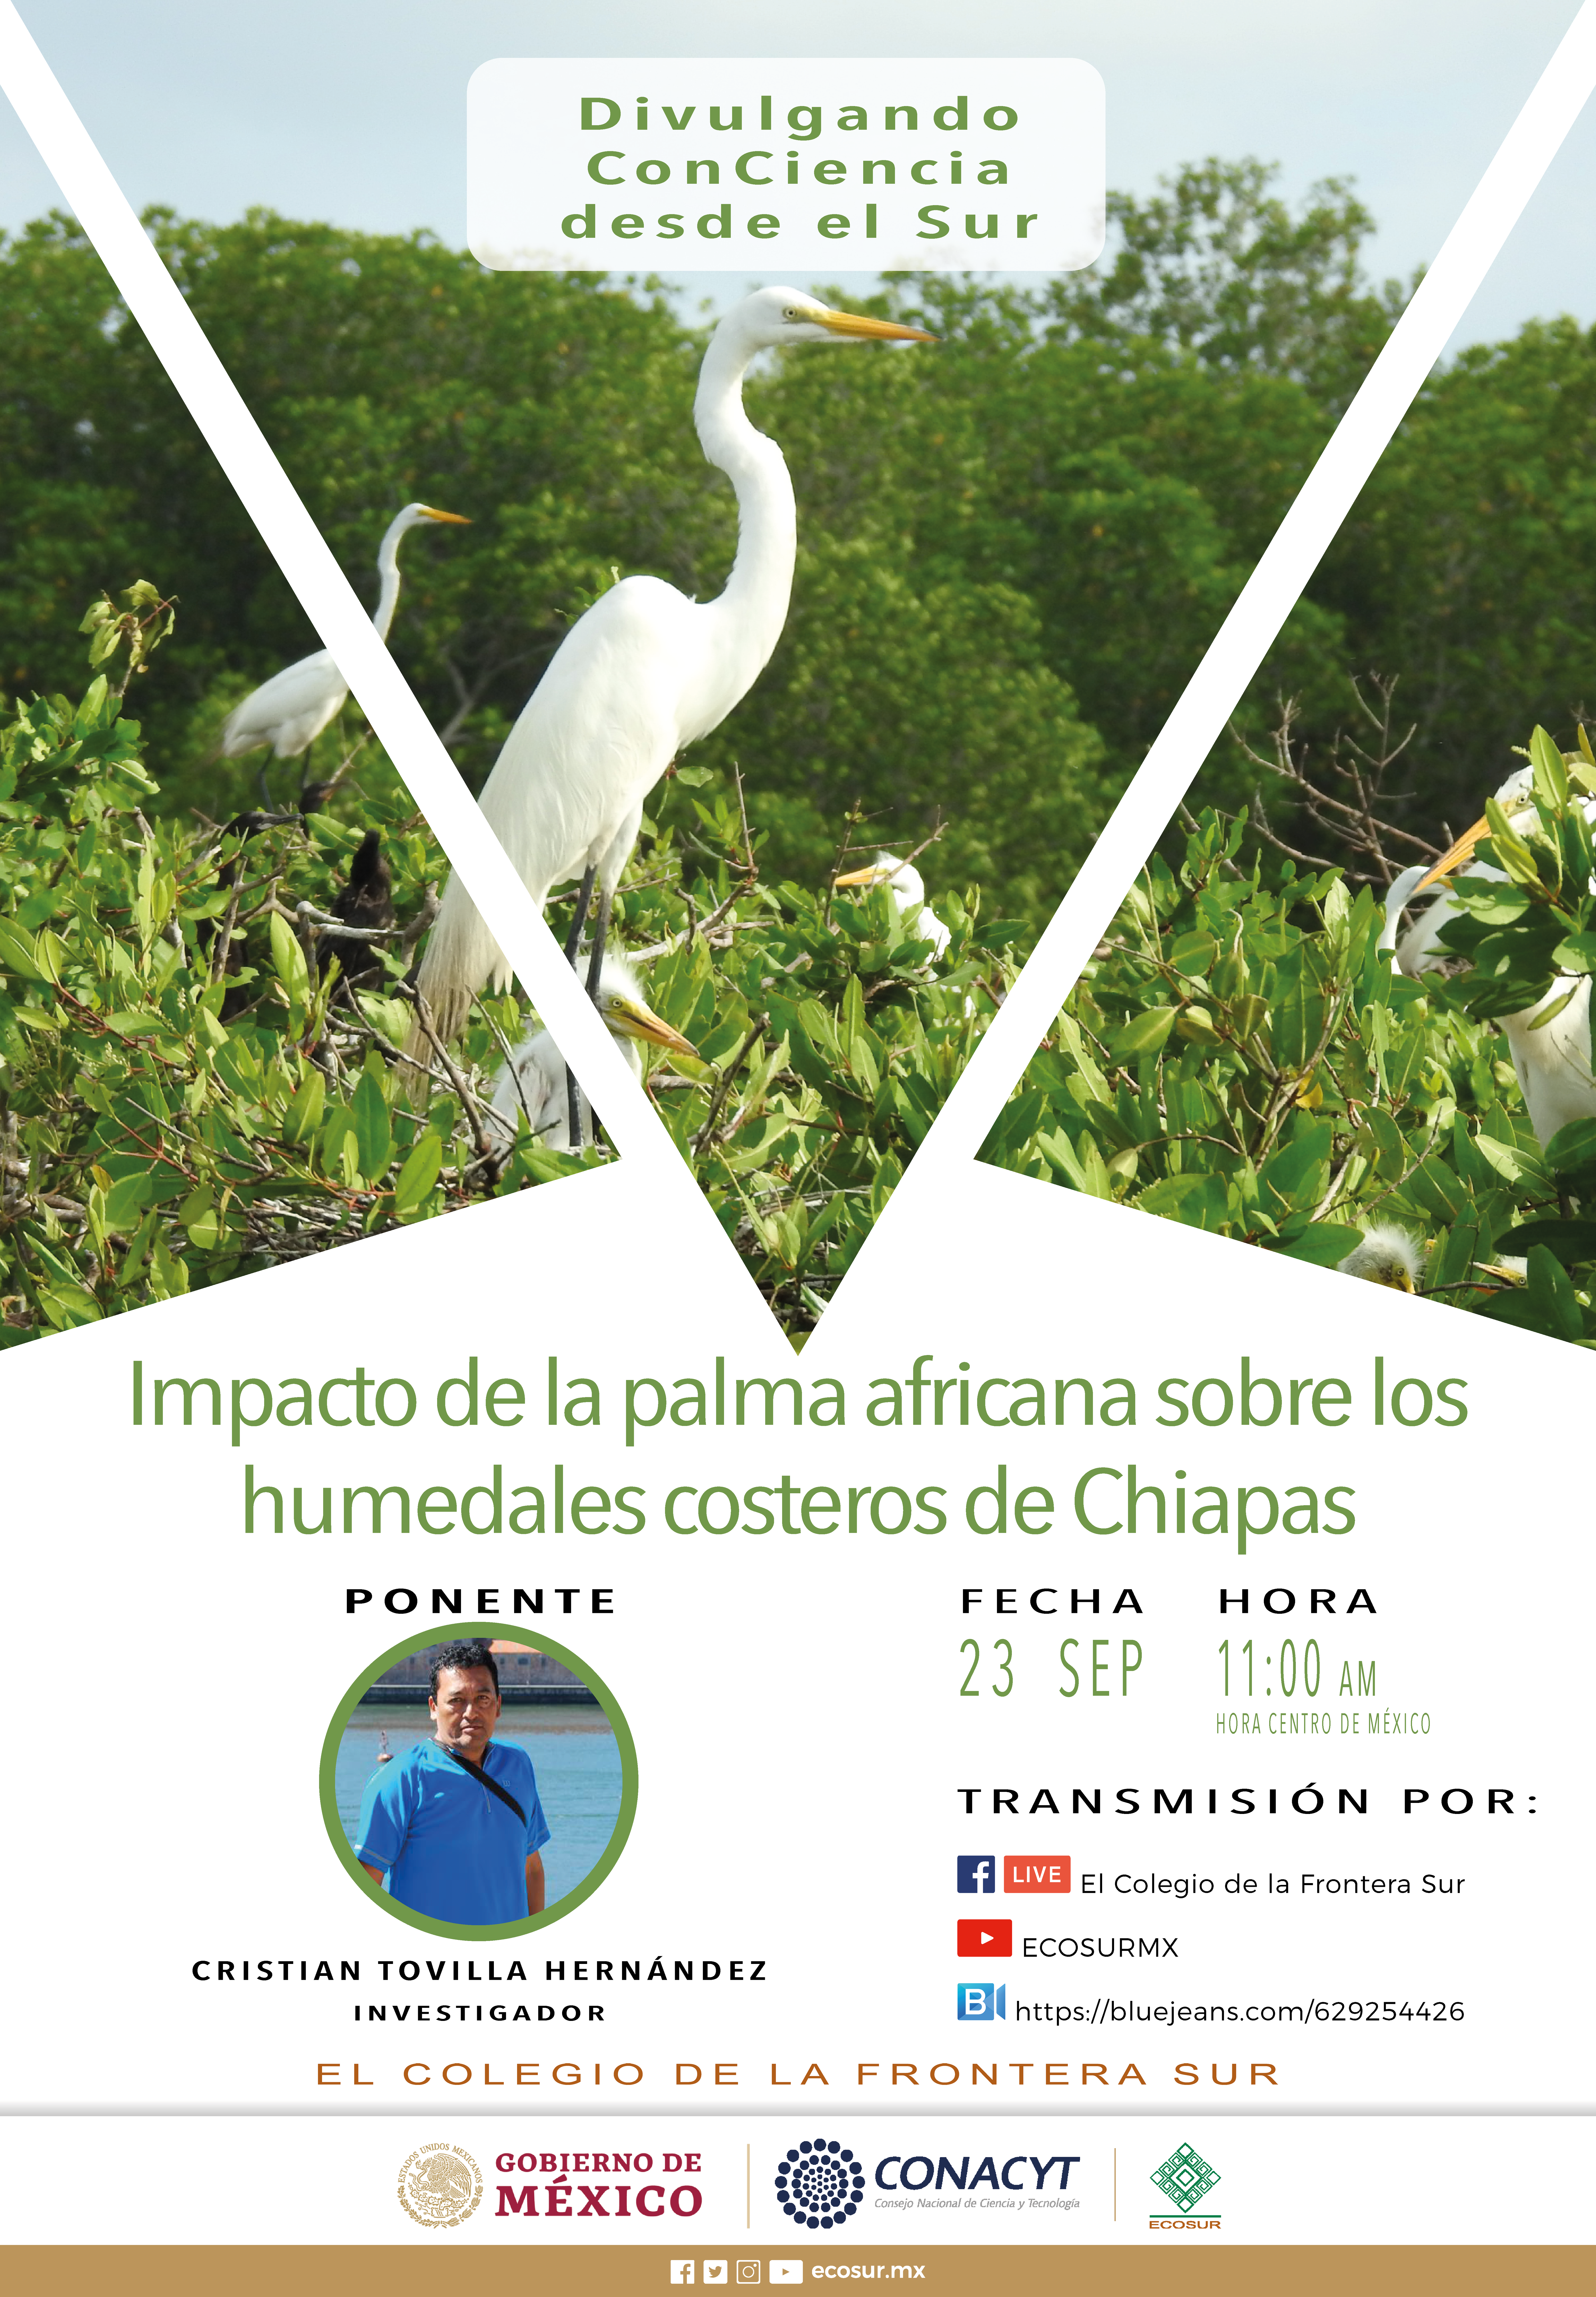 “Impacto de la palma africana sobre los humedales costeros de Chiapas”